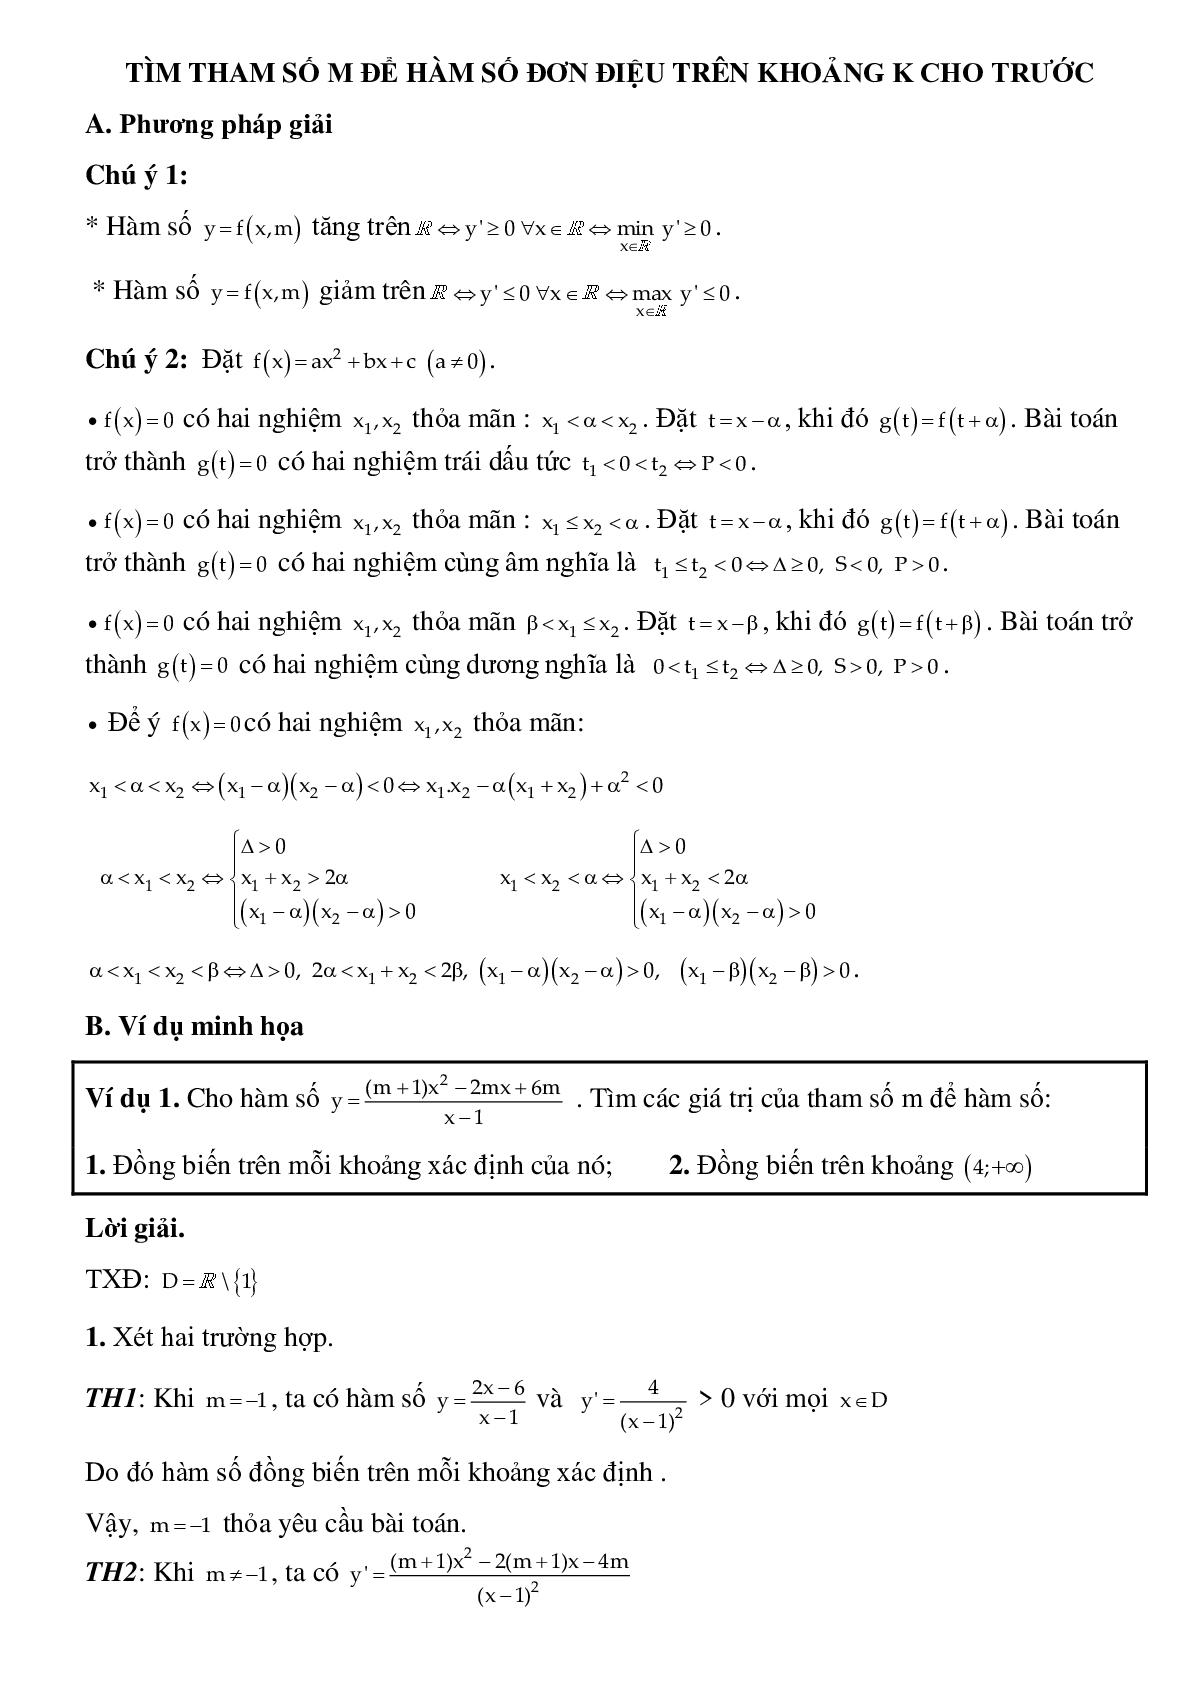 Dạng bài tập Tìm tham số m để hàm số đơn điệu trên khoảng K cho trước (trang 1)